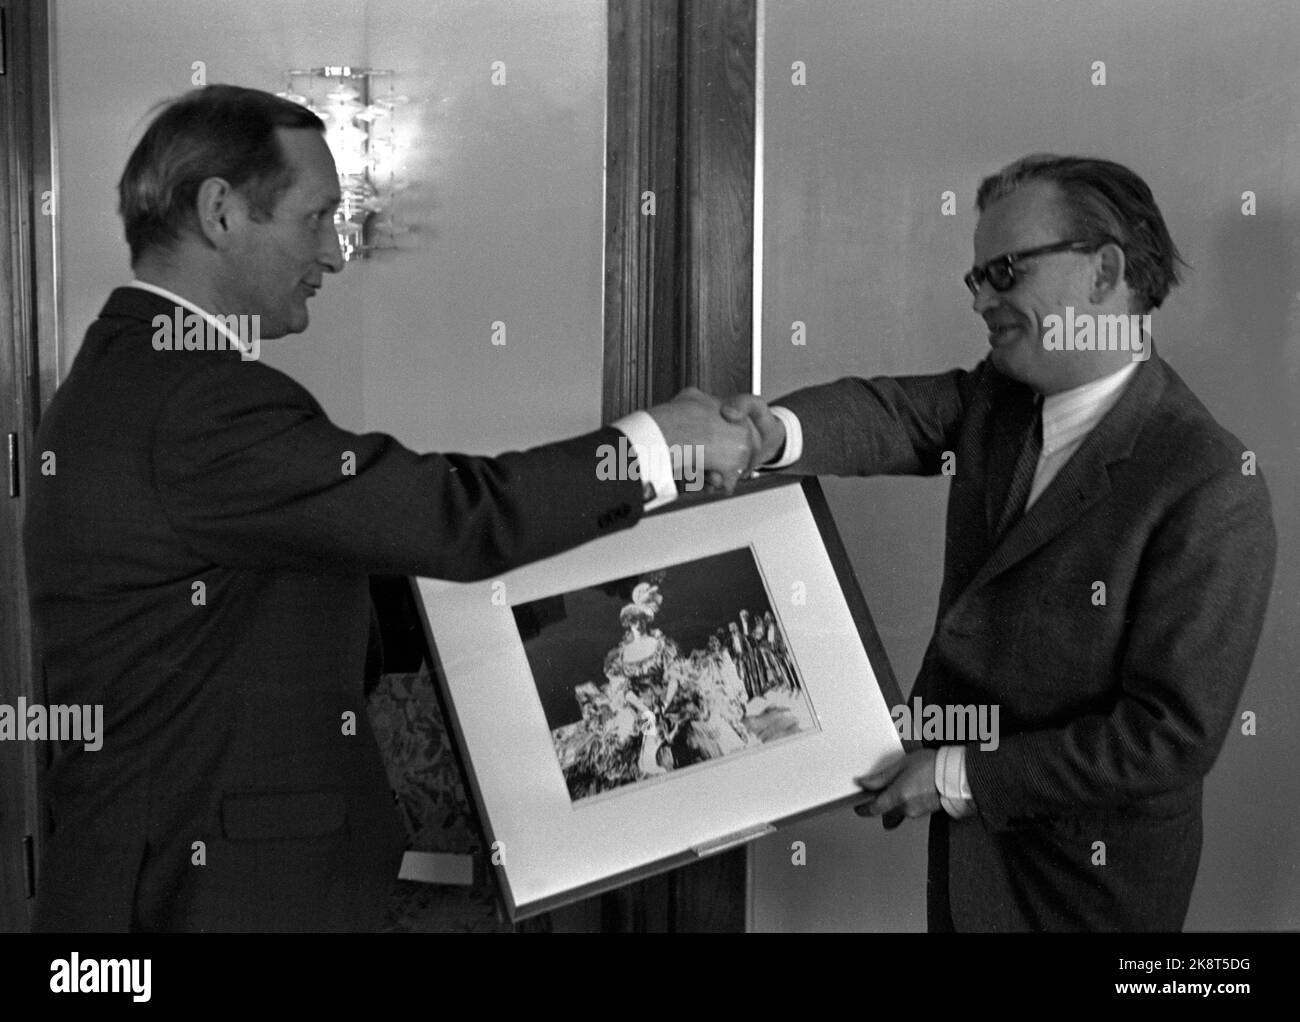 Il regista di Oslo 19690317 Arnljot Berg (Th) riceve il premio della squadra critica per il 1968 per il film "sua altezza reale". Il critico cinematografico Sven Krohn presenta il premio. Foto: NTB / NTB Foto Stock